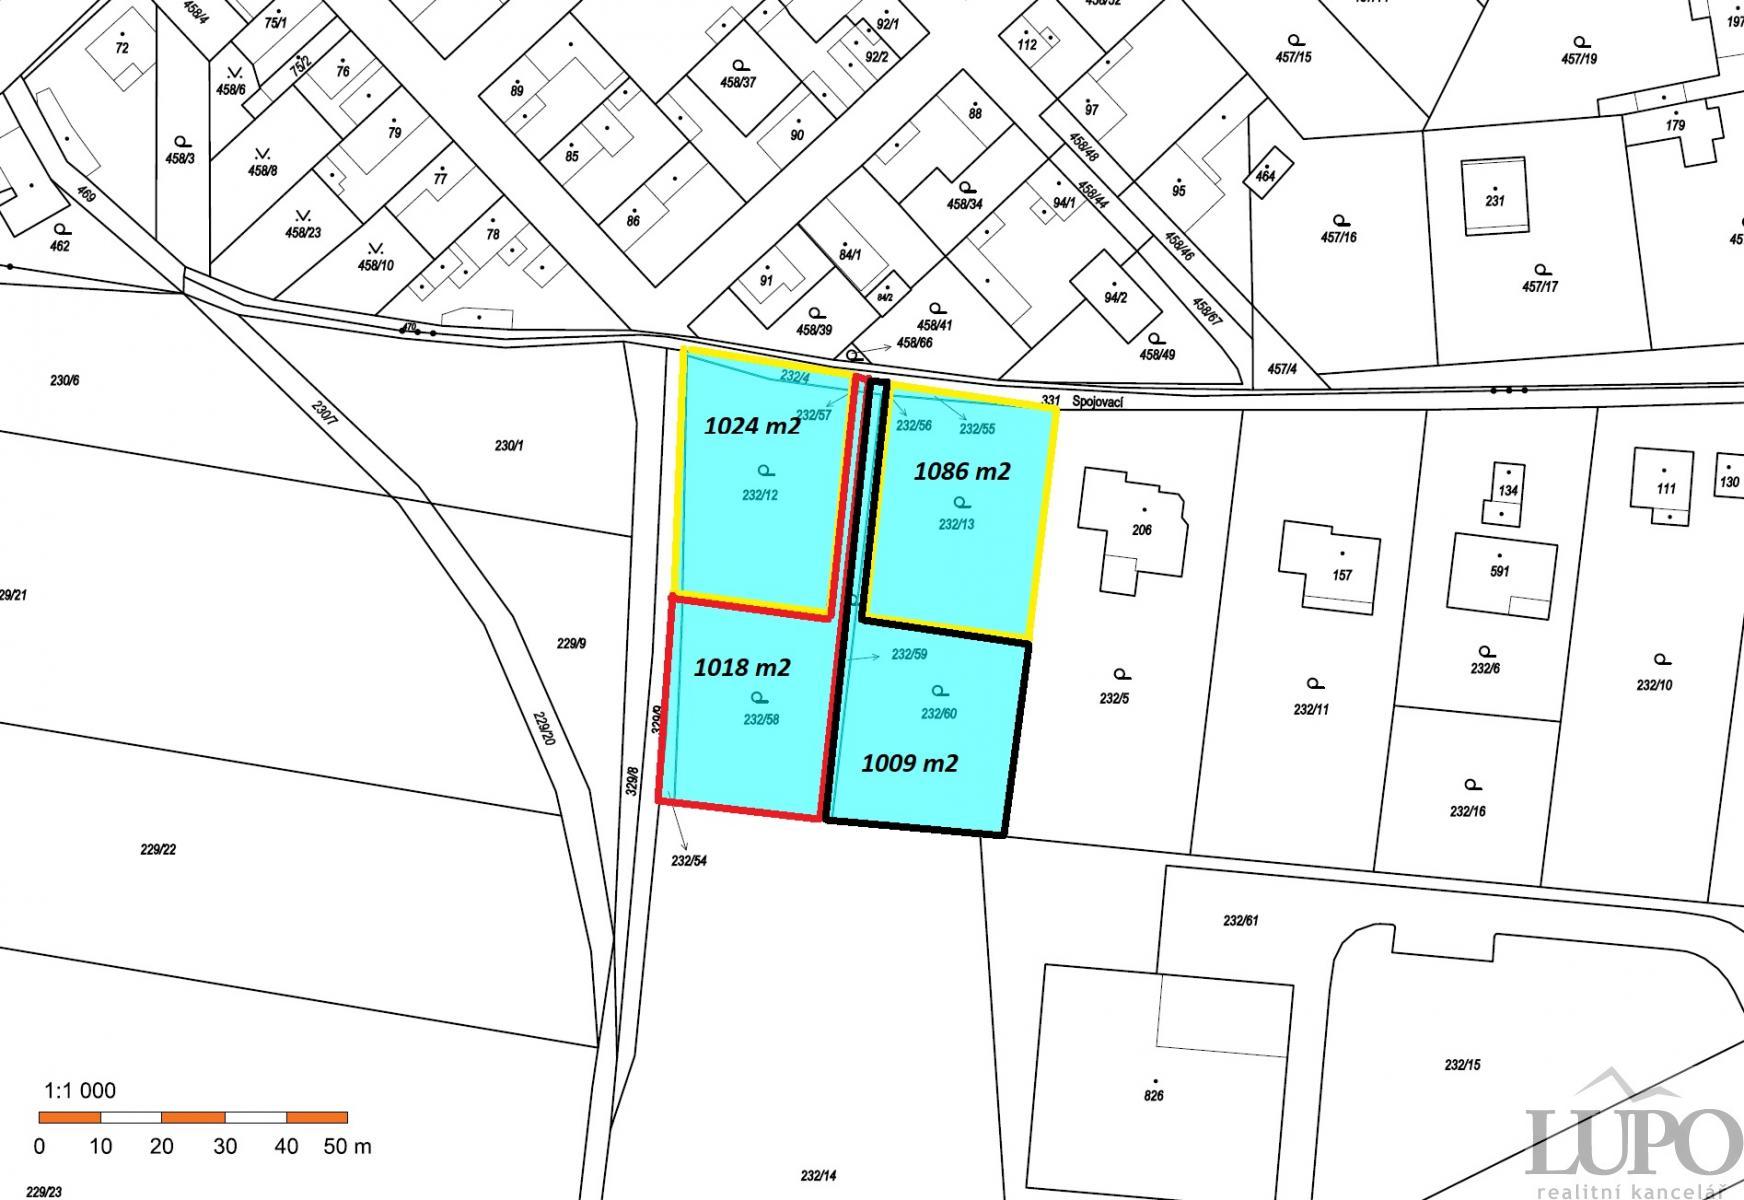 K prodeji 4 stavební pozemky o vel. 4137 se stavebním povolením na 4 domy- 8 bytových jednotek o vel